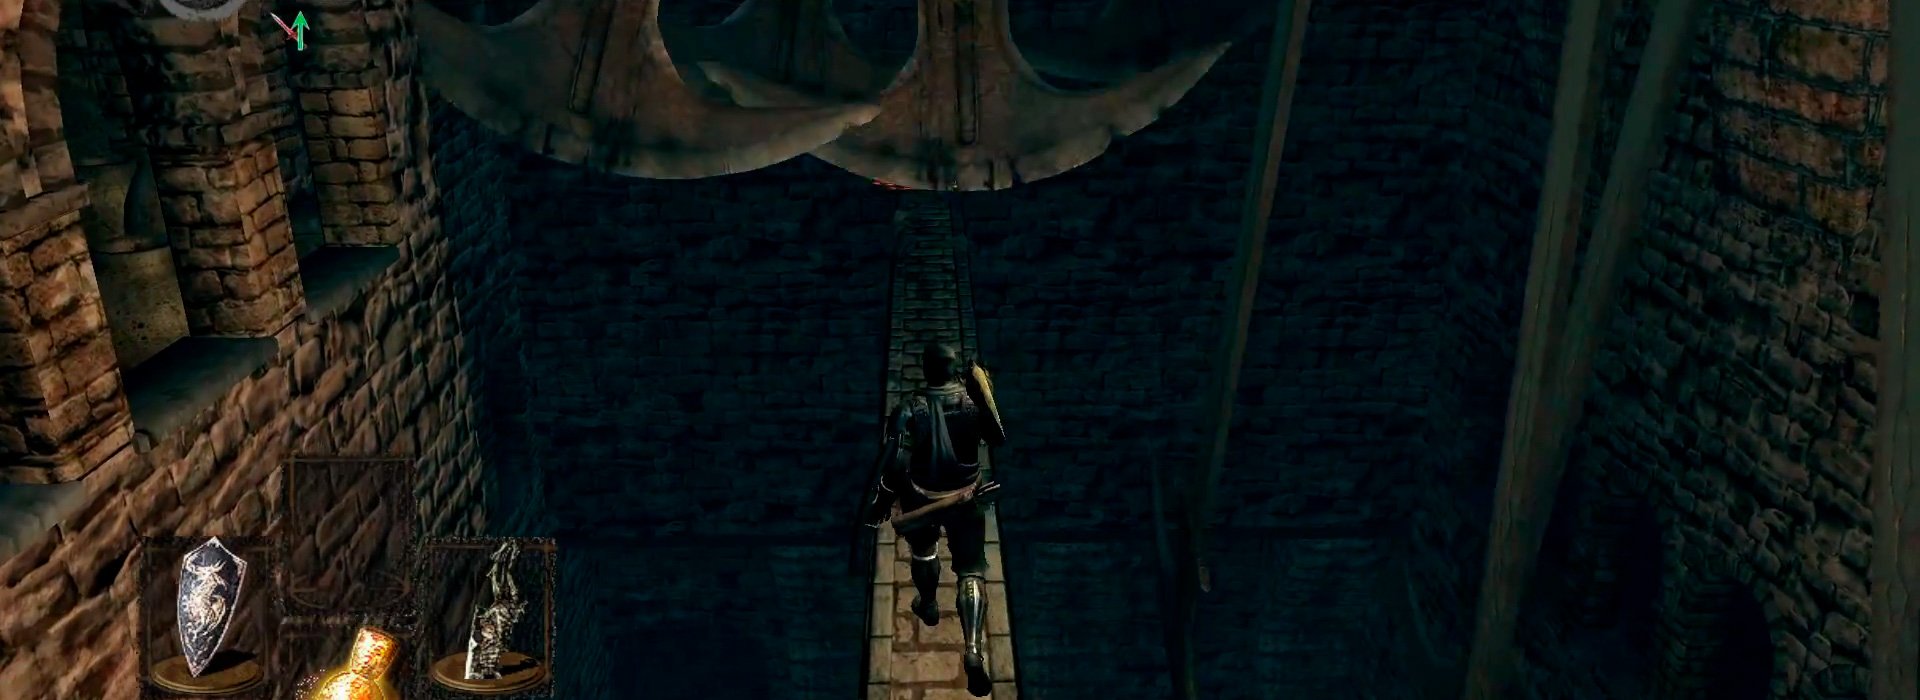 Локации в Dark Souls - Крепость Сена